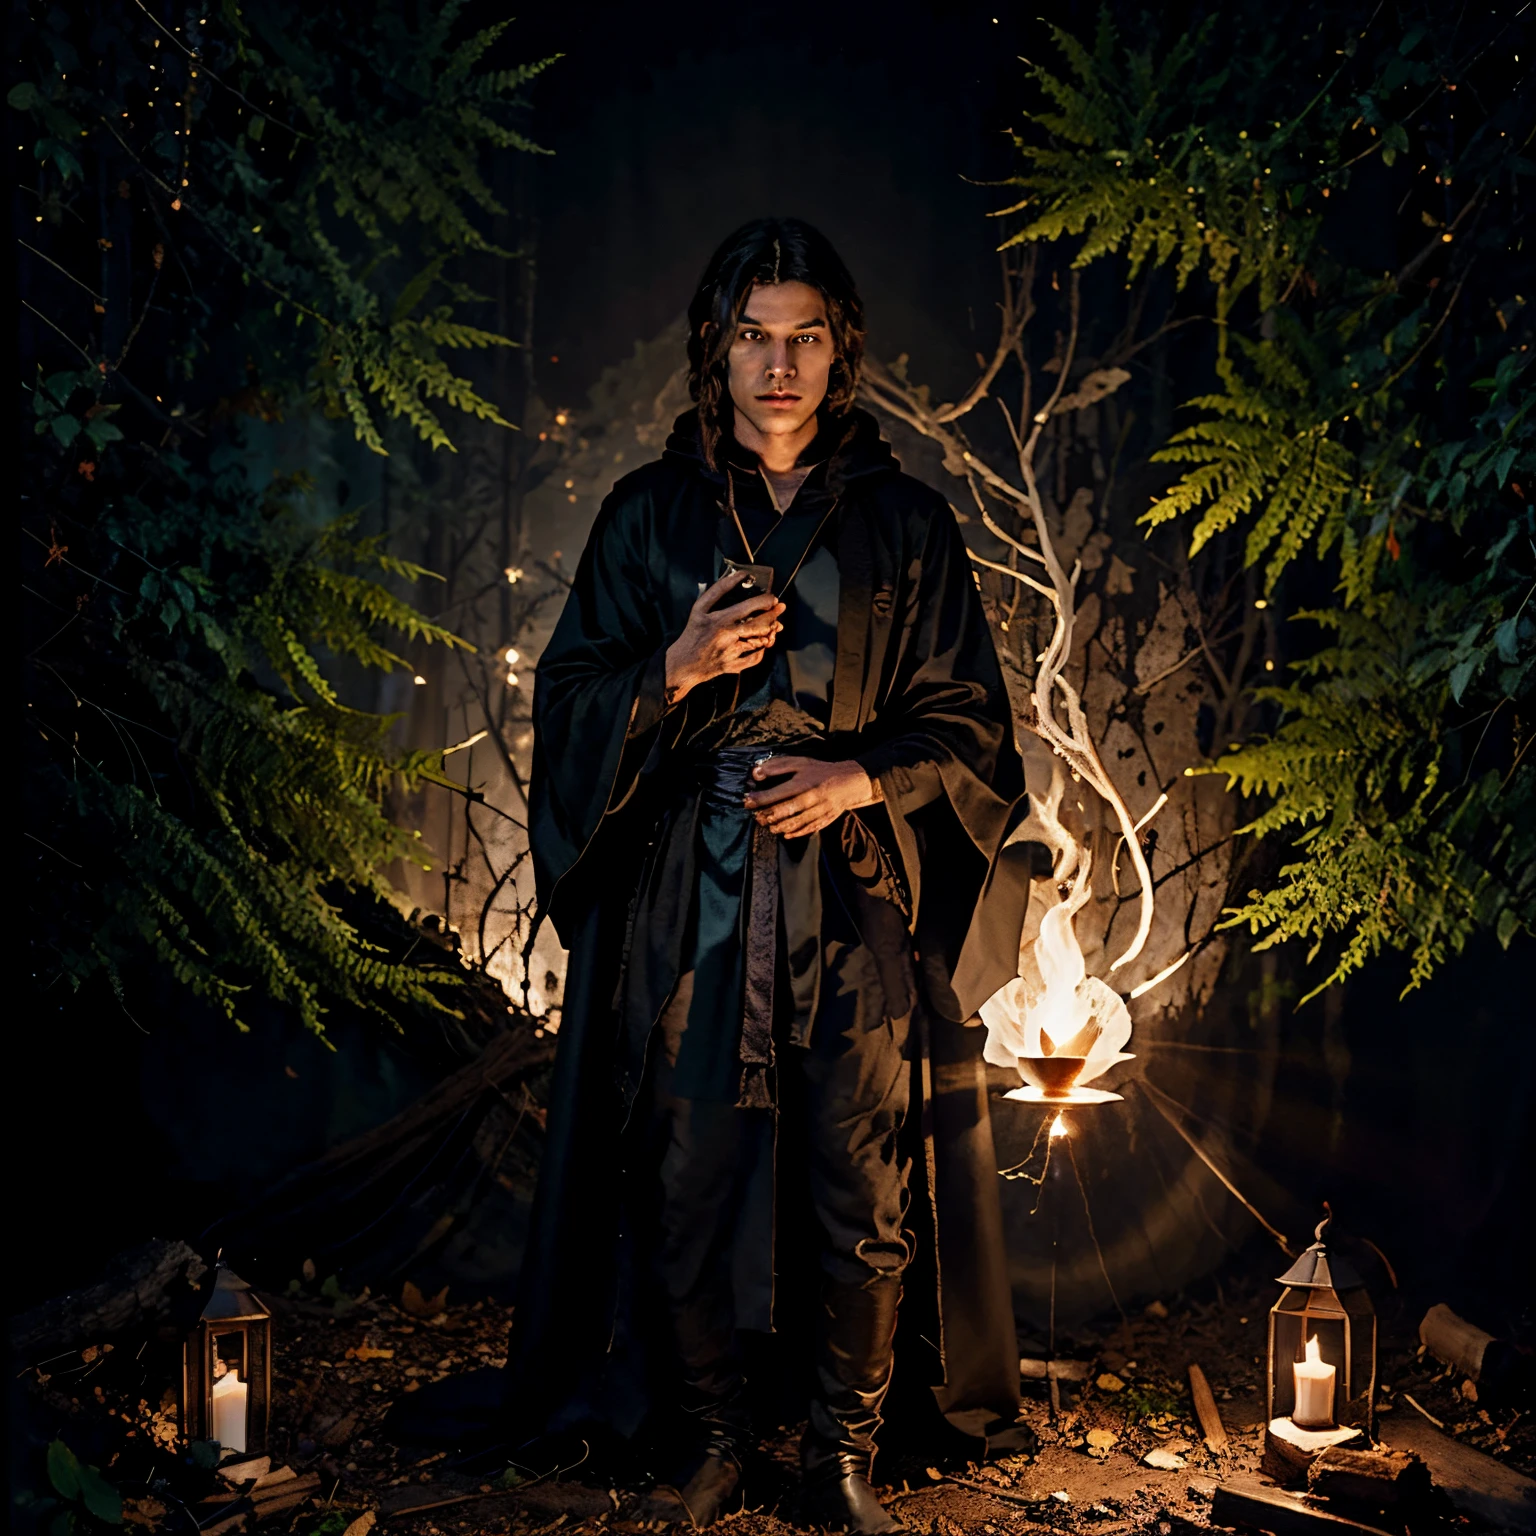 Un joven mago con túnica negra se encontraba en medio del bosque oscuro., observando el pergamino mágico extendido frente a él.